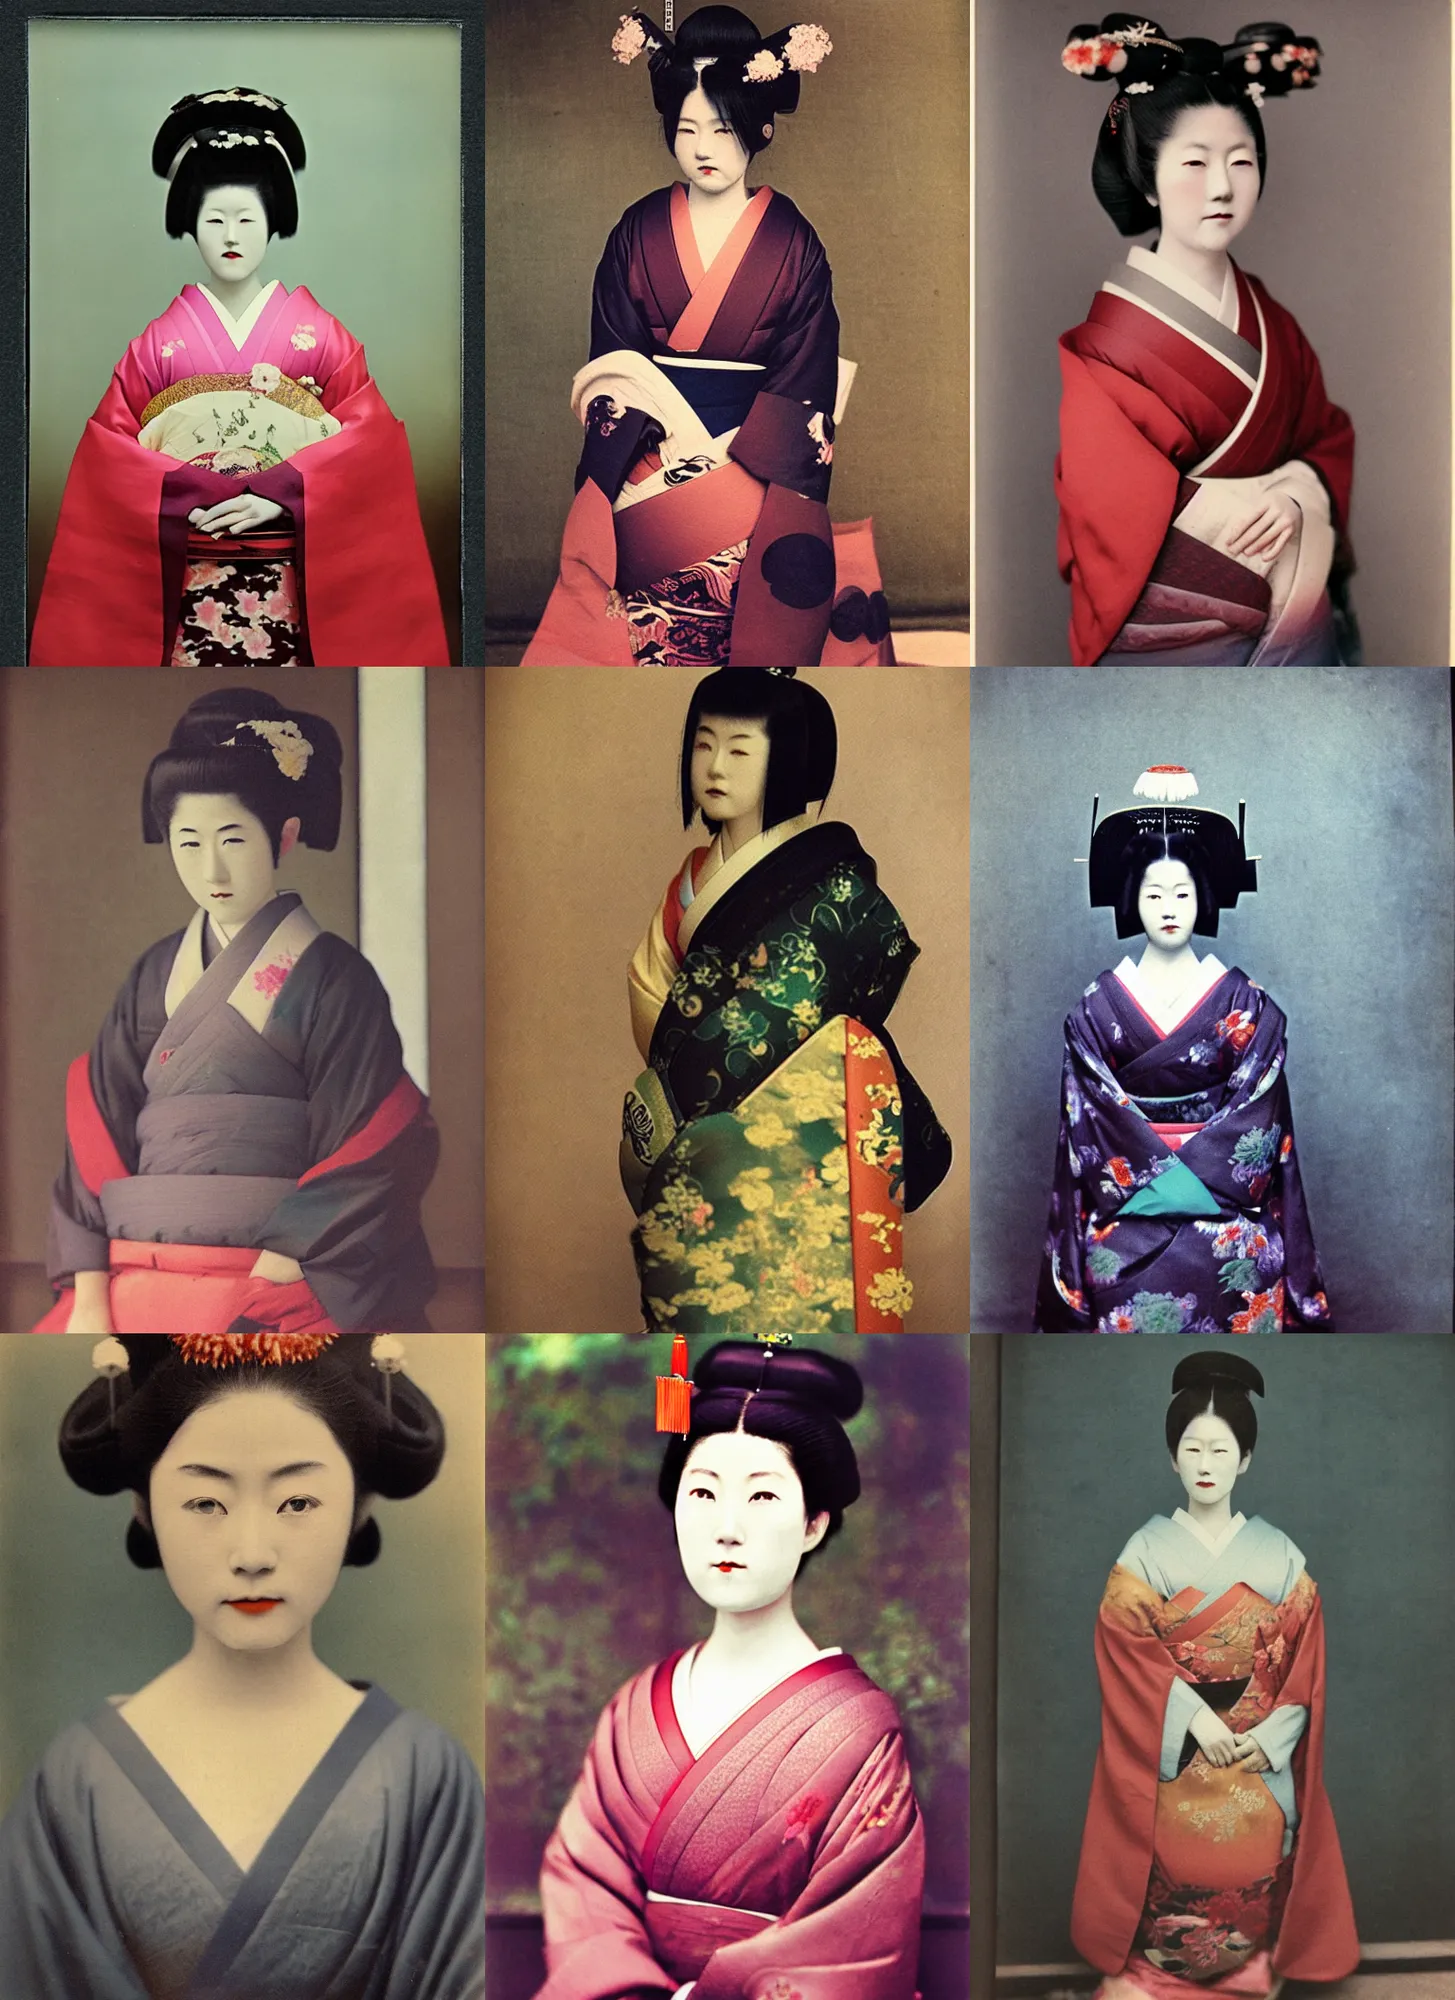 Prompt: Portrait Photograph of a Japanese Geisha Autochrome